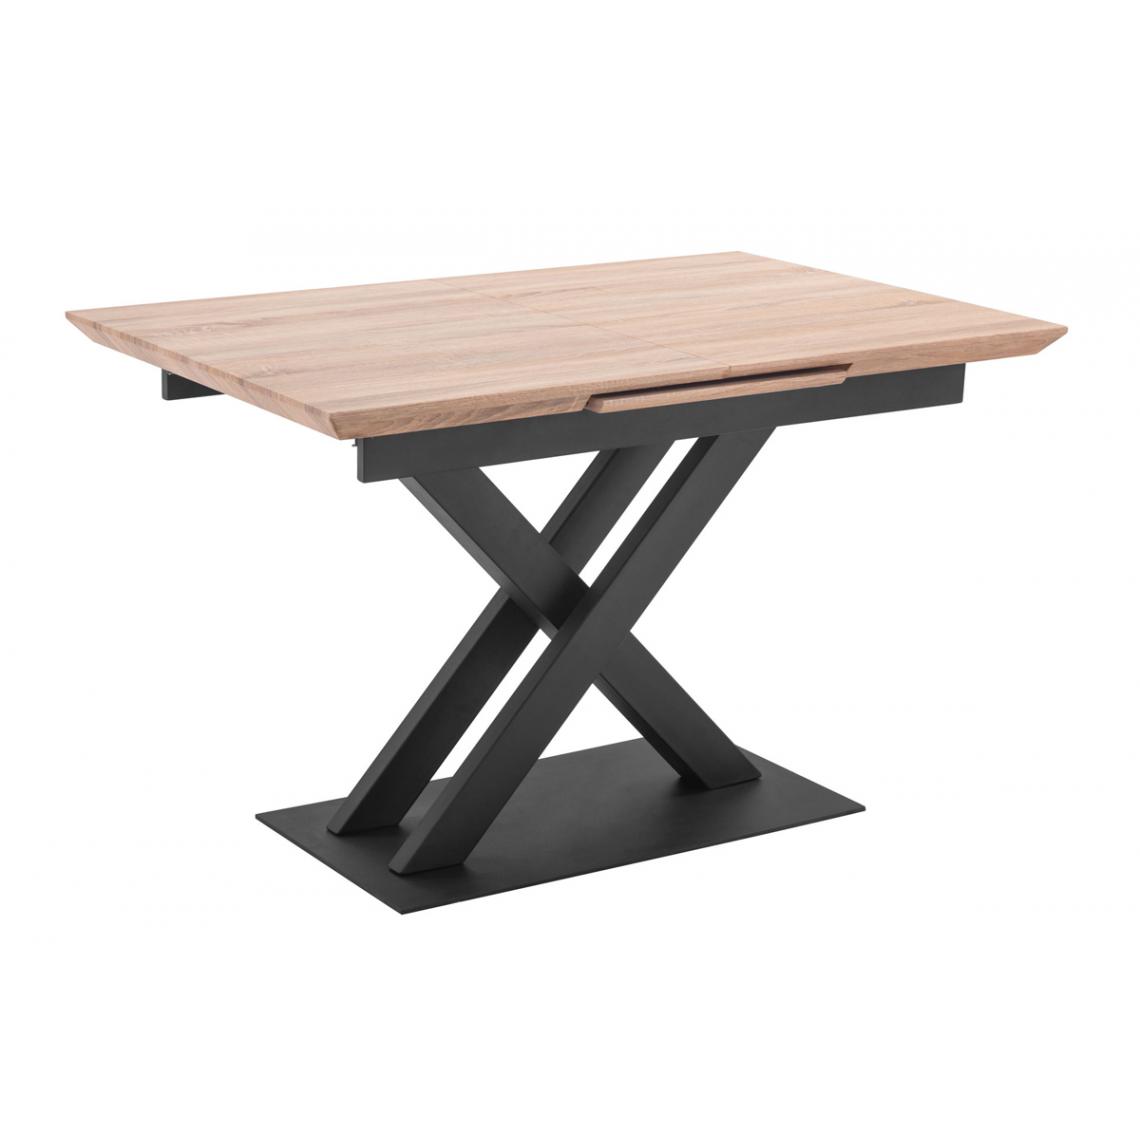 Pegane - Table à manger extensible en bois coloris chêne / pieds noir - Longueur 120-160 x profondeur 80 x hauteur 76 cm - Tables à manger